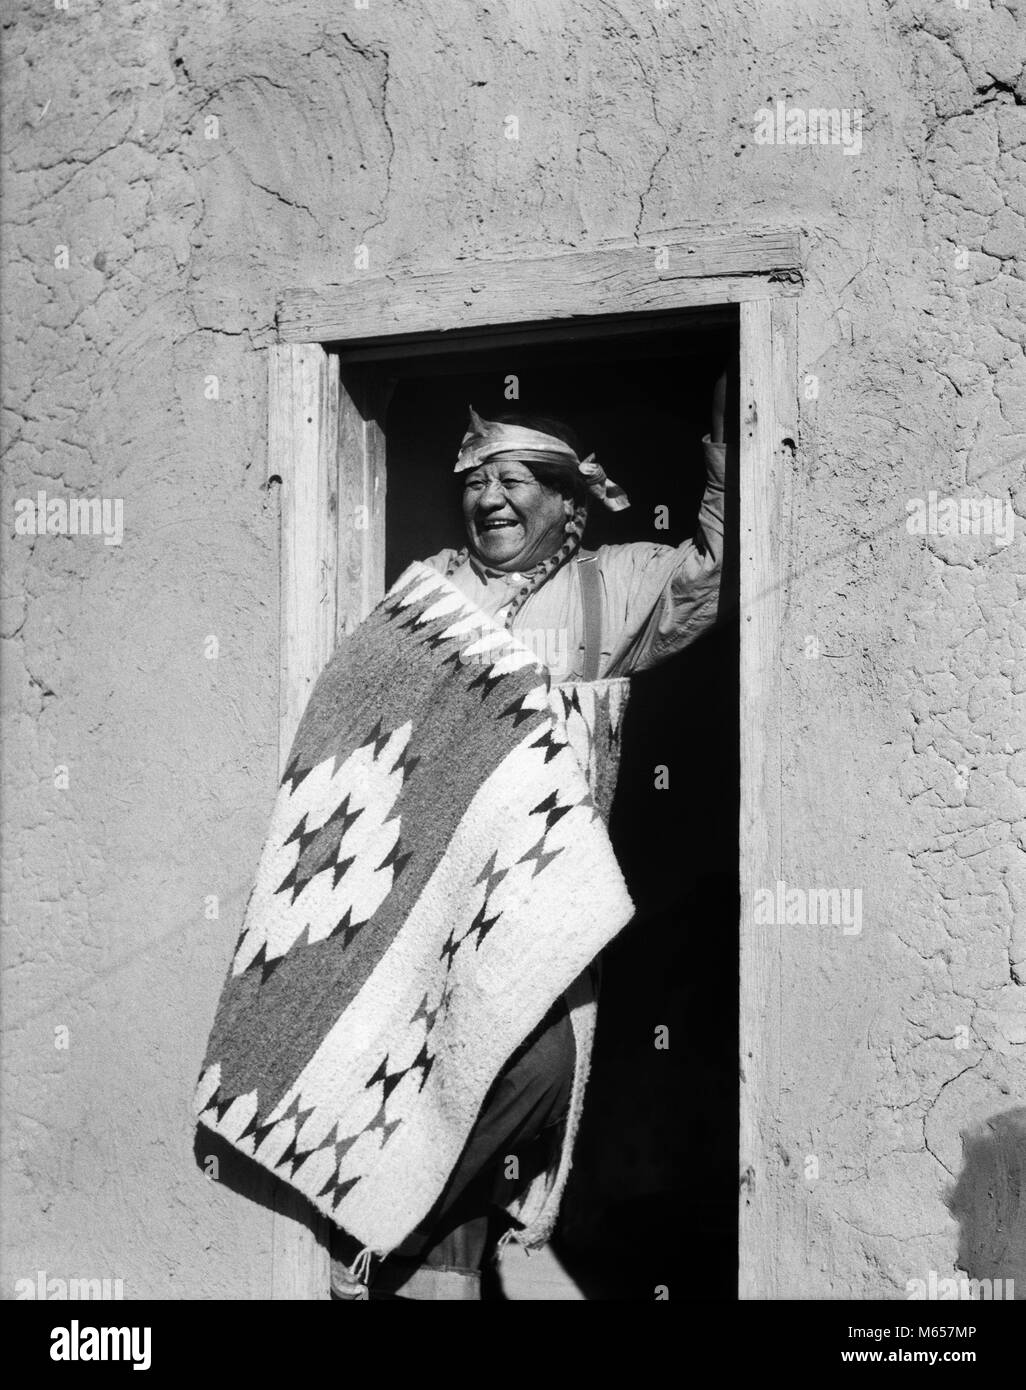 1930 SMILING Native American Indian MAN STANDING IN DOORWAY portant des costumes typiques de SAN ILDEFONSO PUEBLO NOUVEAU MEXIQUE USA - i2678 HAR001 HARS NOSTALGIE INDIENS middle-aged homme d'âge moyen 50-55 ans 55-60 ans BONHEUR JOYEUX SOURIRES JOYEUX NATIVE AMERICAN PUEBLO HOMMES AUTOCHTONES AMÉRICAINS TYPIQUES DU NOUVEAU MEXIQUE B&W NOIR ET BLANC ILDEFONSO OLD FASHIONED PERSONNES Banque D'Images